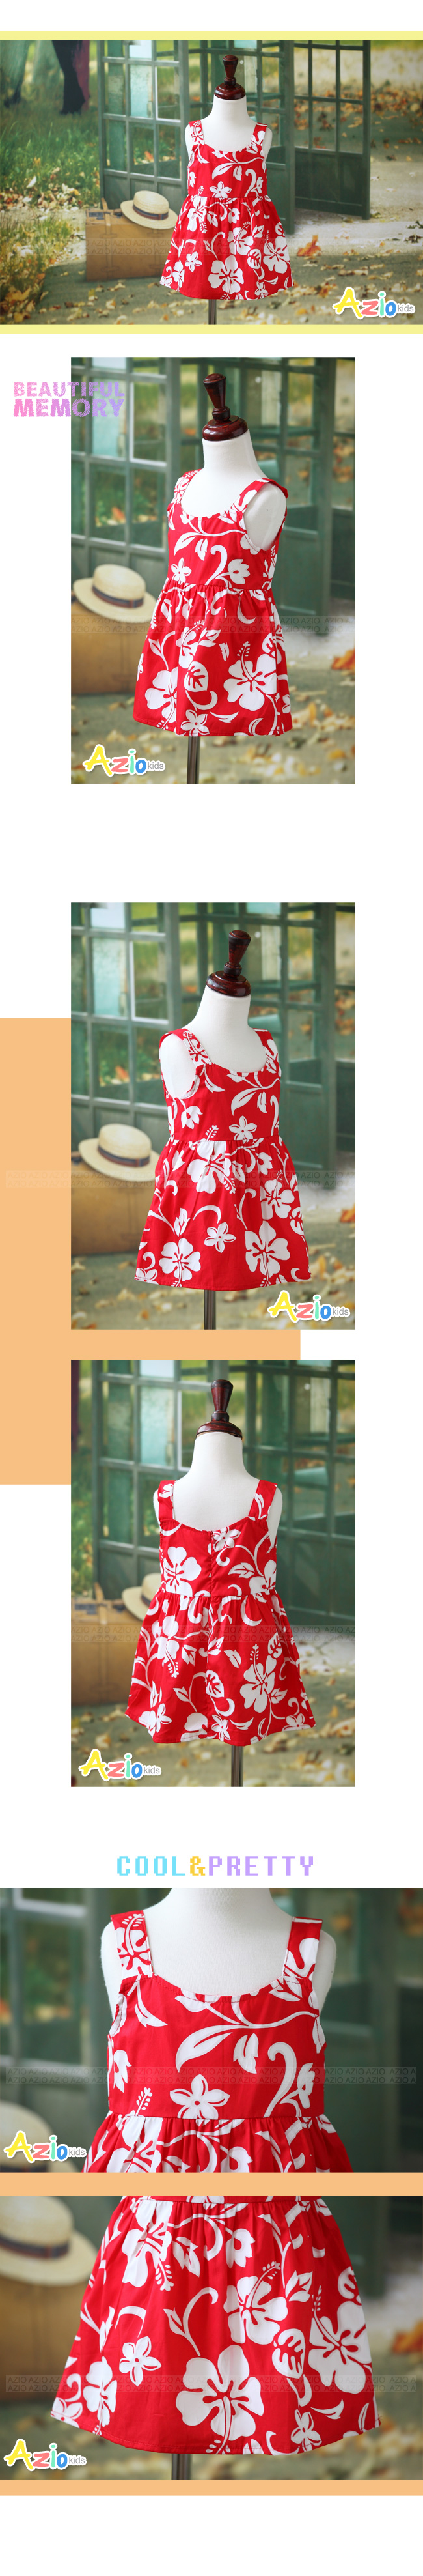 Azio 女童洋裝 夏日花朵印花肩帶無袖洋裝(紅)